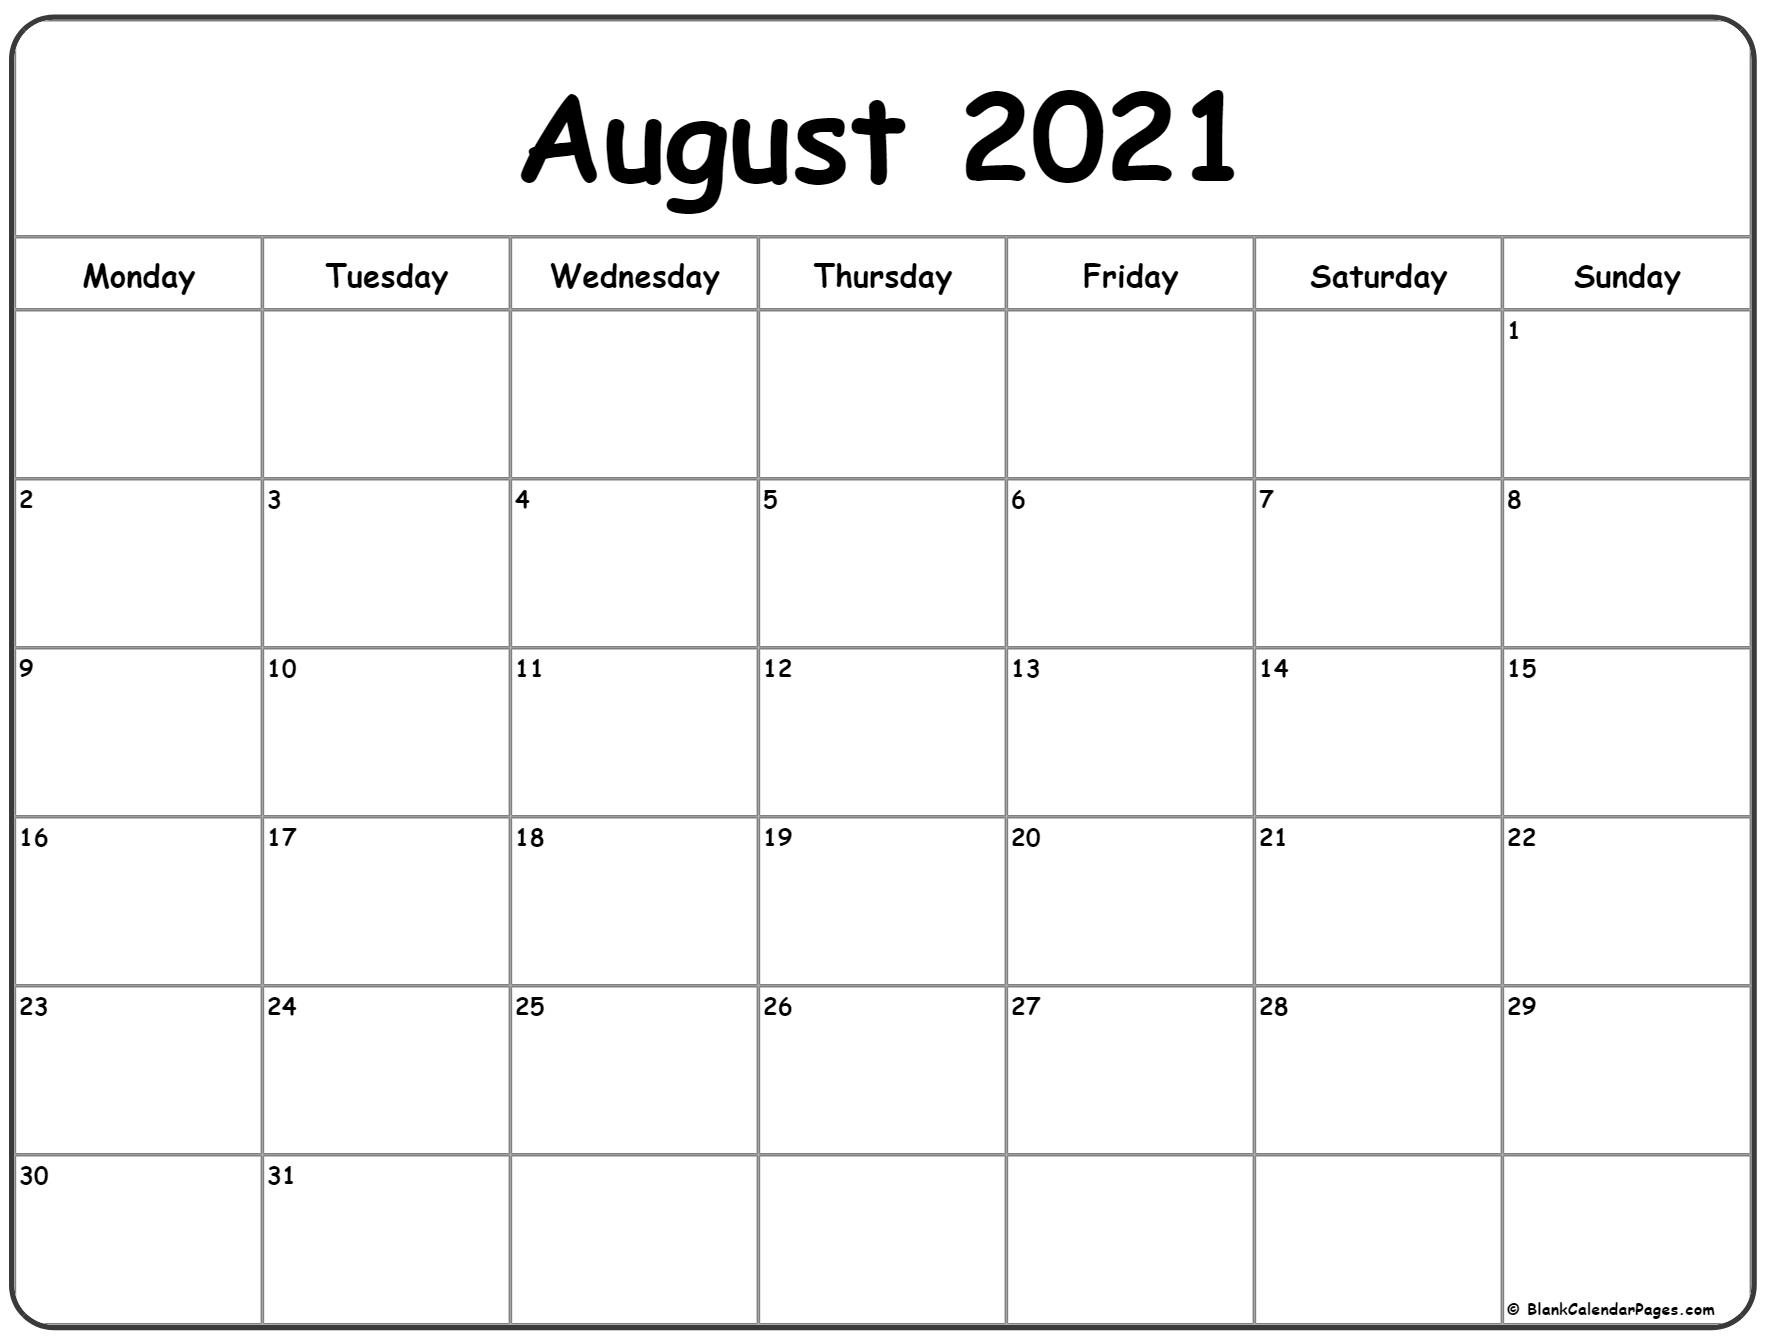 Catch Calendar August 2021